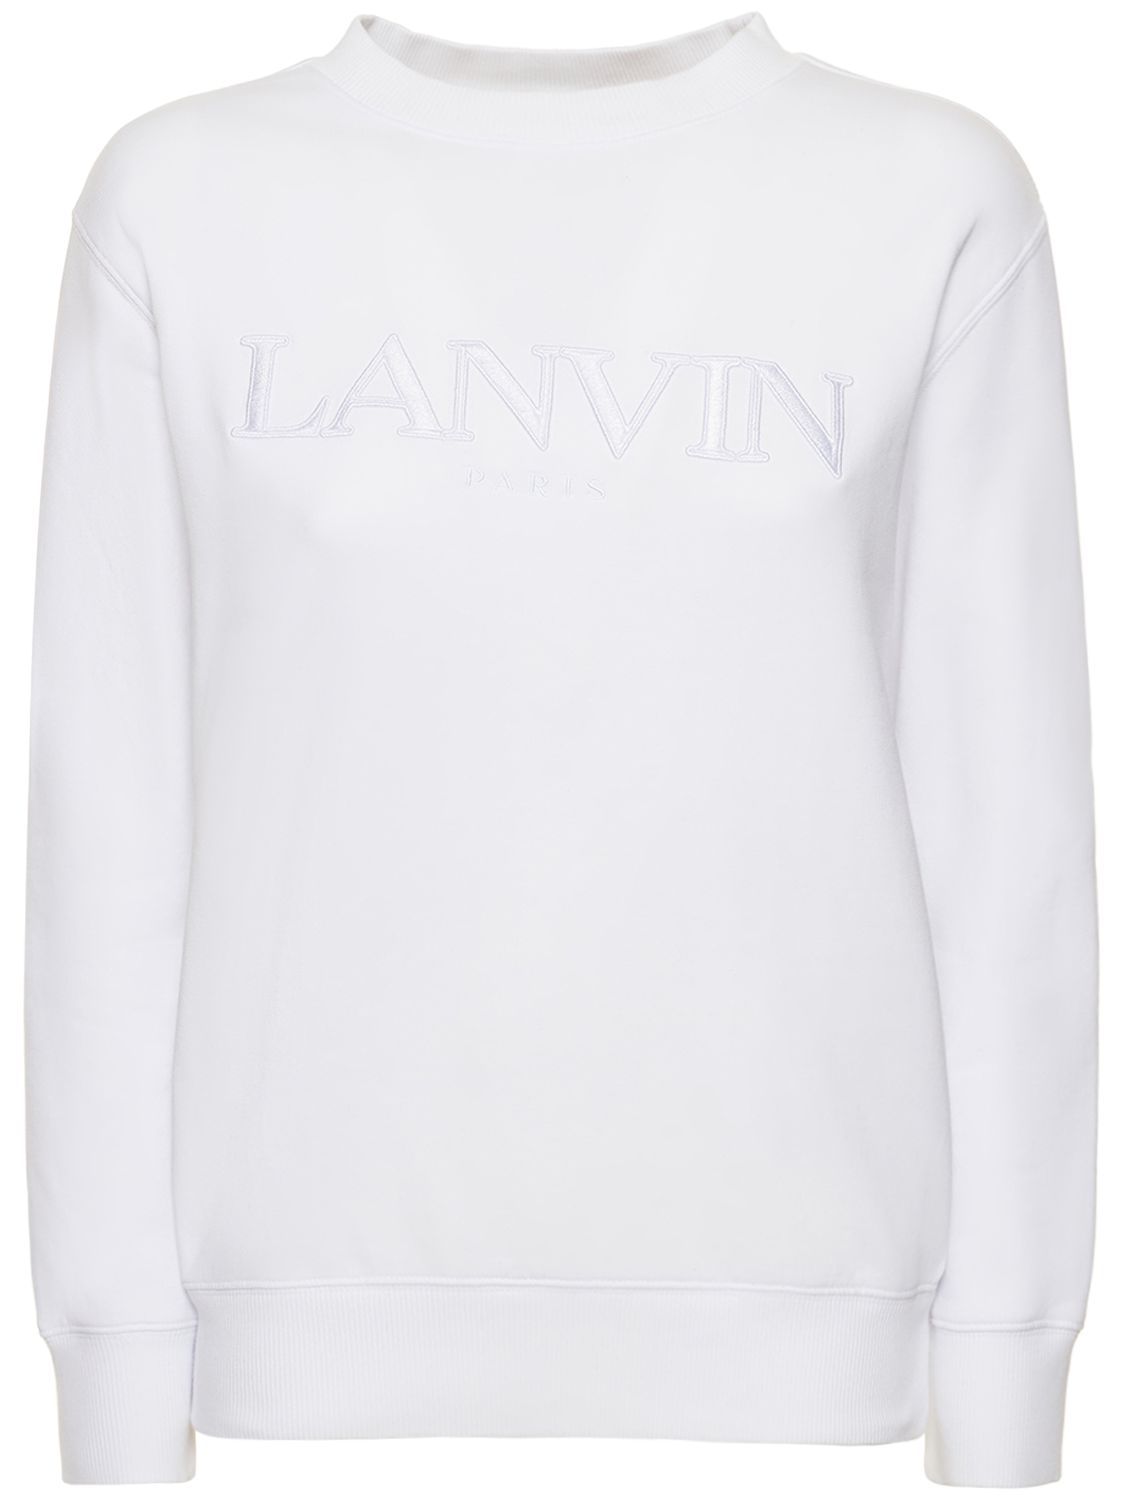 Besticktes Sweatshirt Aus Baumwolle Mit Logo - LANVIN - Modalova